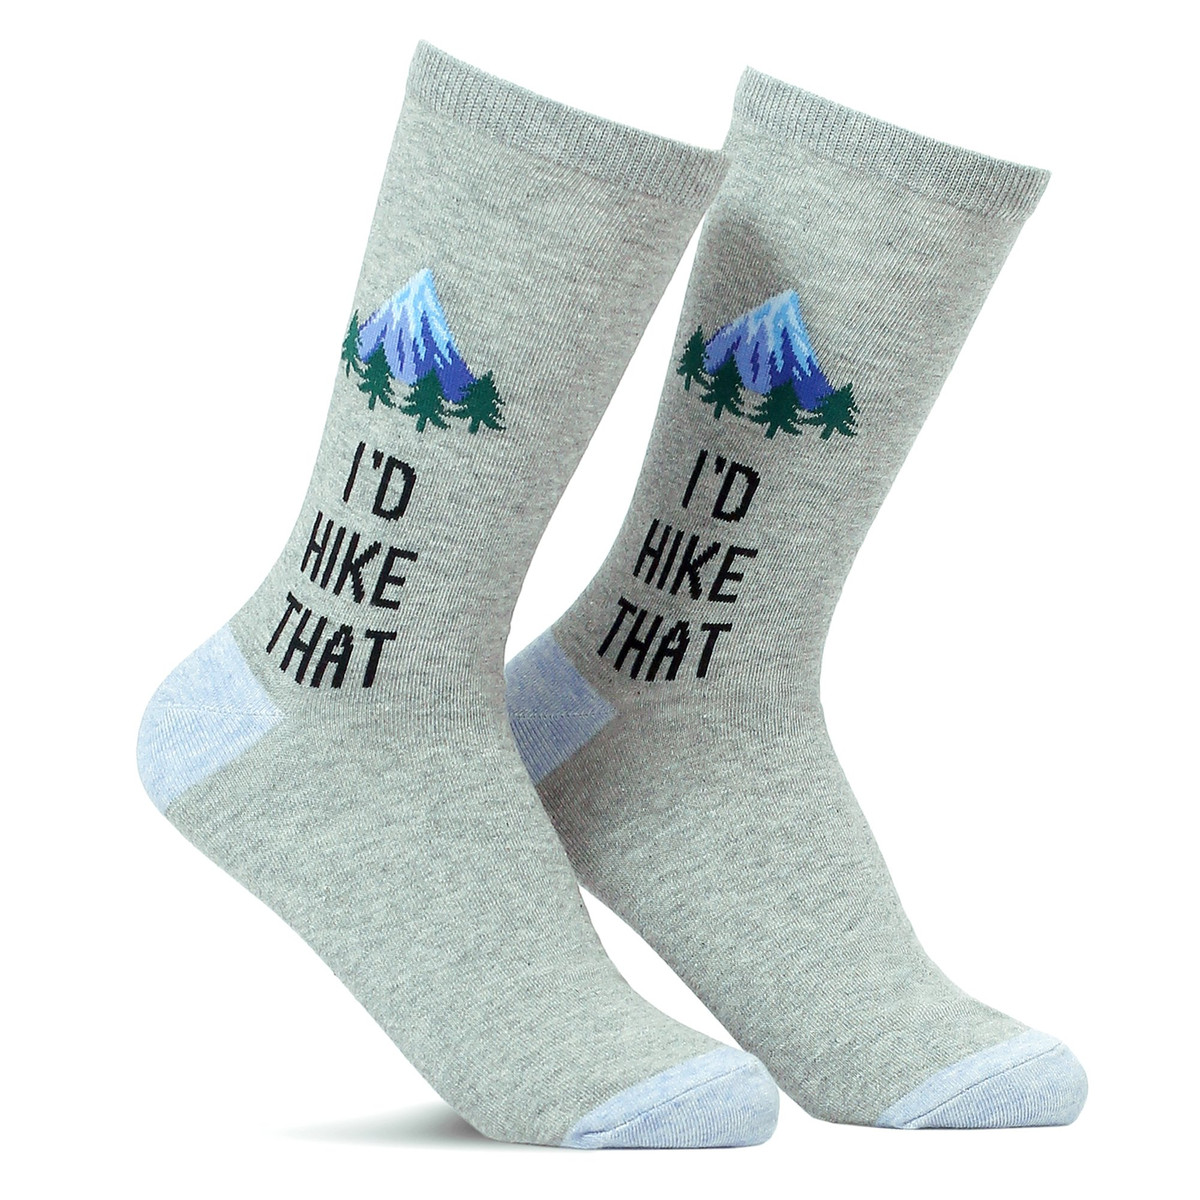 I'd Hike That Socks for Women